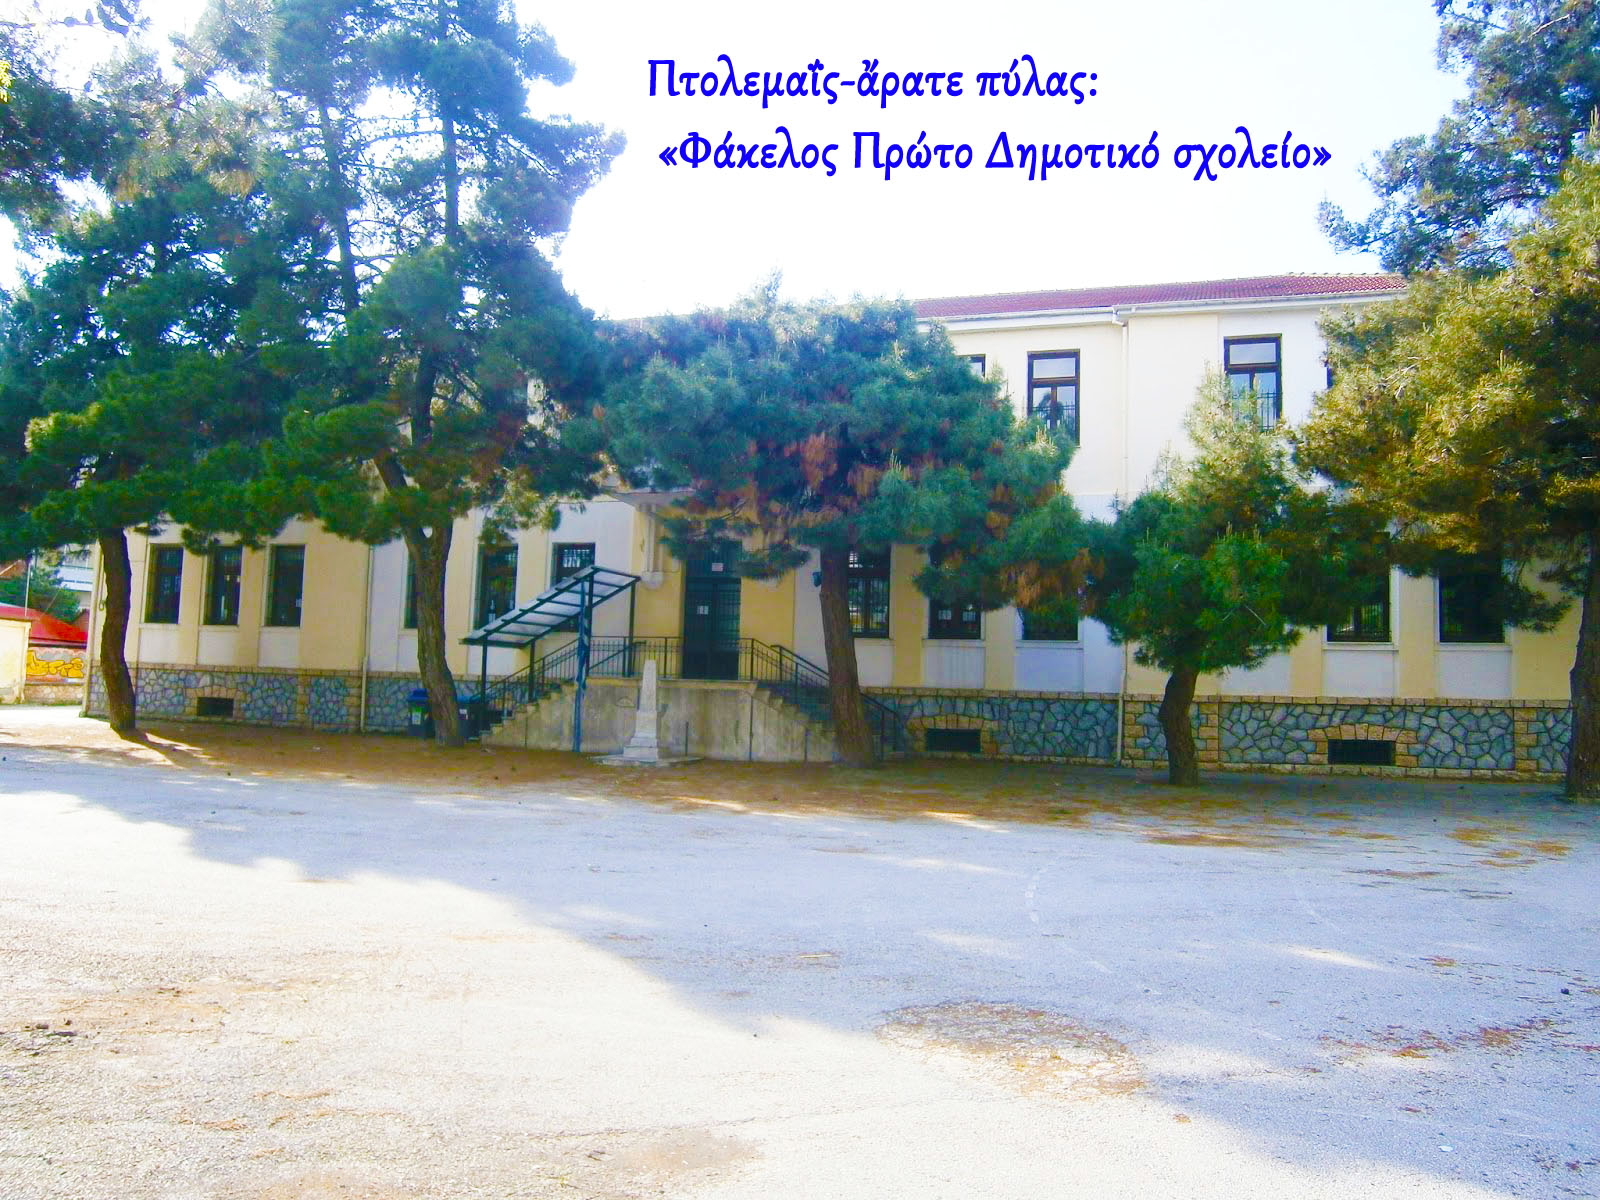 Πτολεμαΐς-ἄρατε πύλας: Φάκελος Πρώτο Δημοτικό σχολείο